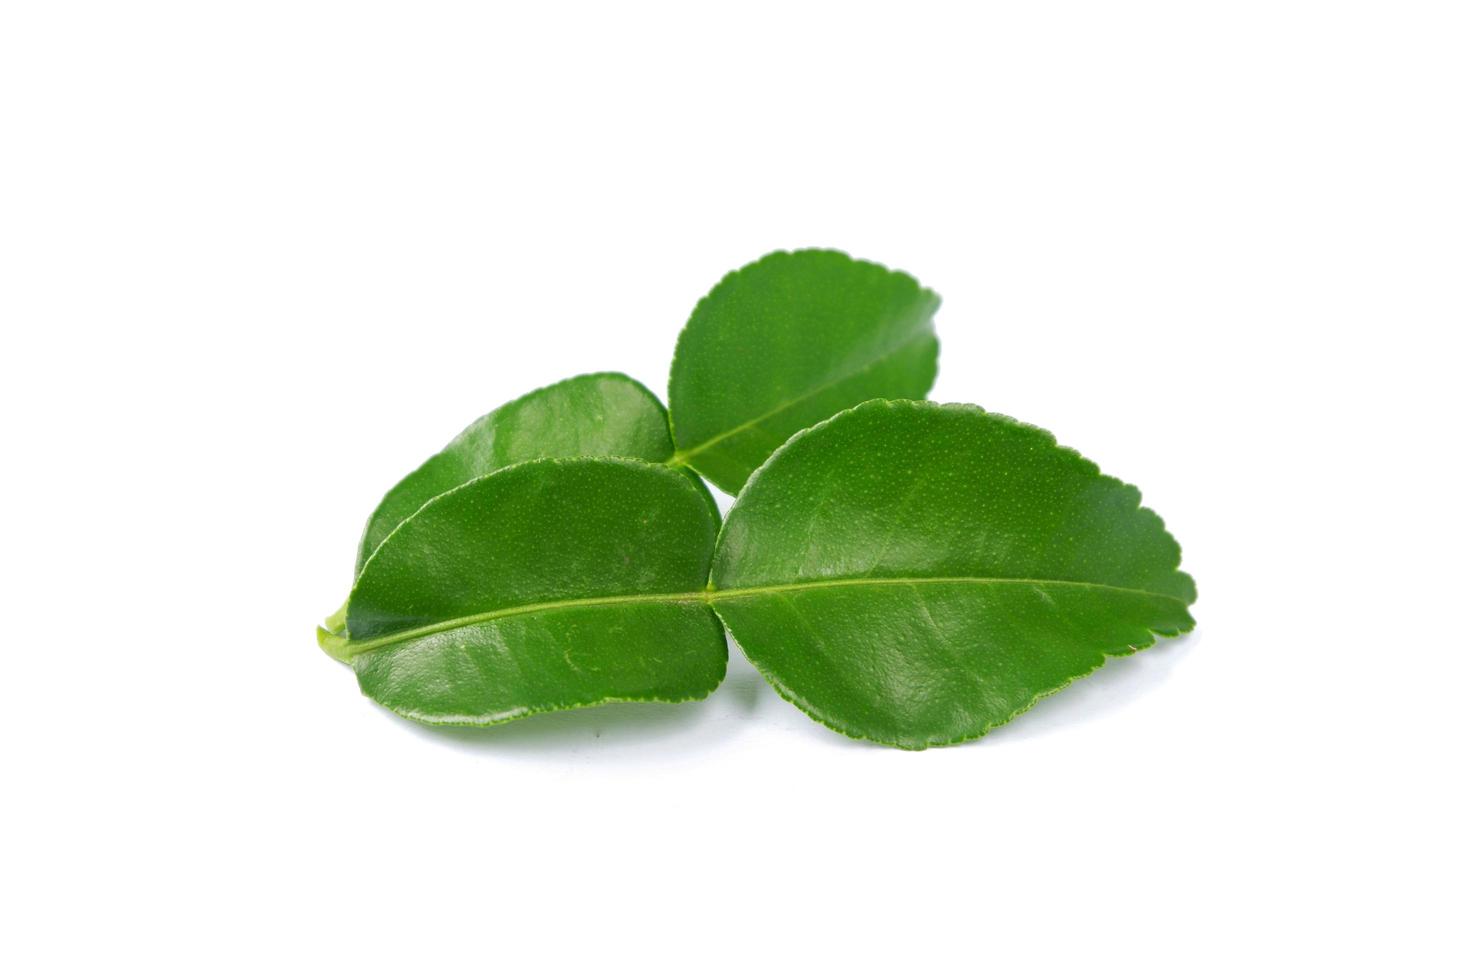 bergamot leaf isolated on a white background photo